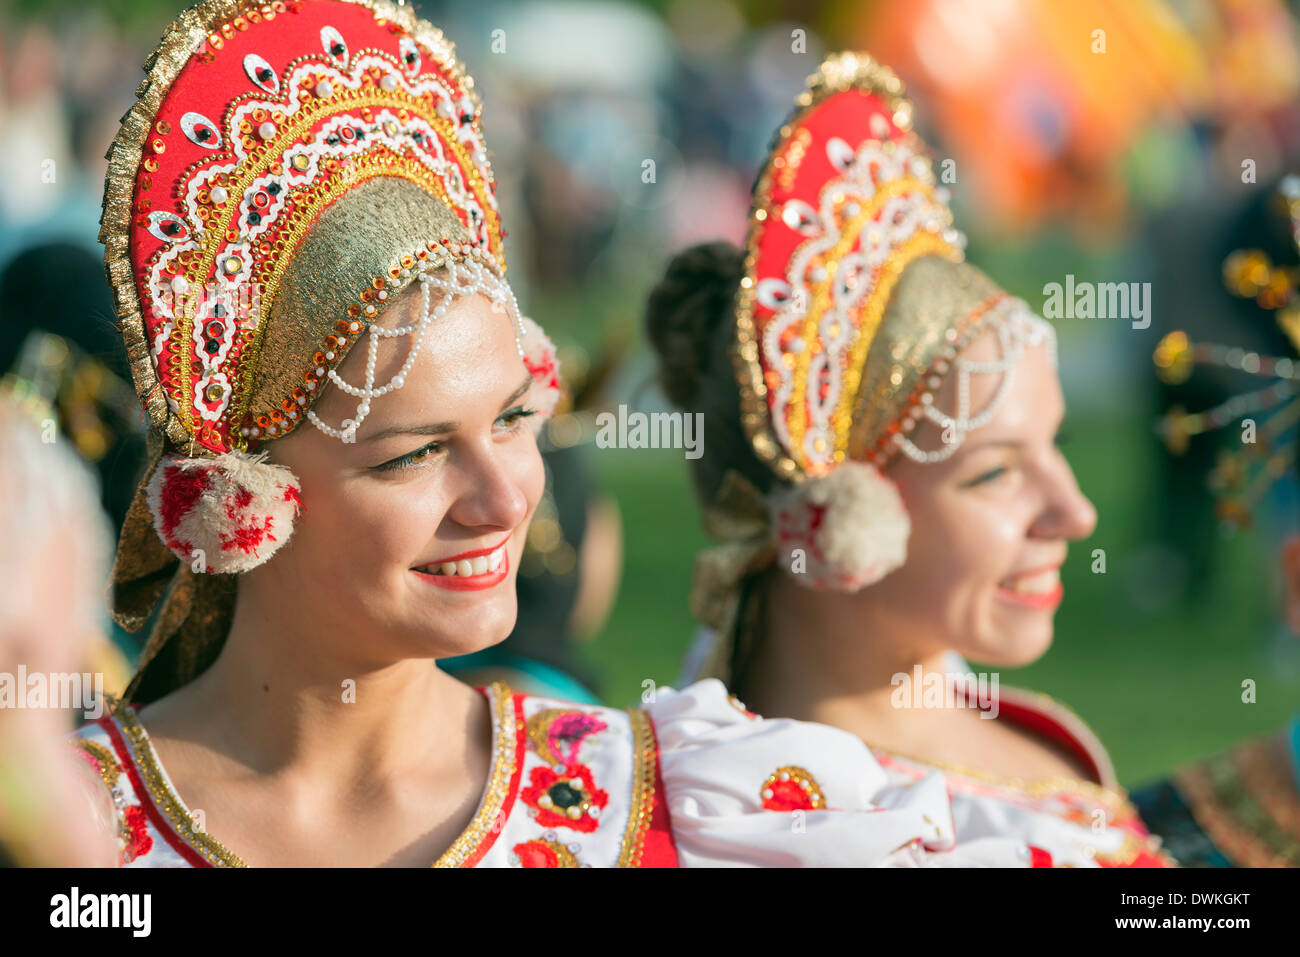 Les artistes interprètes ou exécutants de Roumanie en costume, Festival International de Folklore de montagne, Zakopane, Carpates, Pologne Banque D'Images